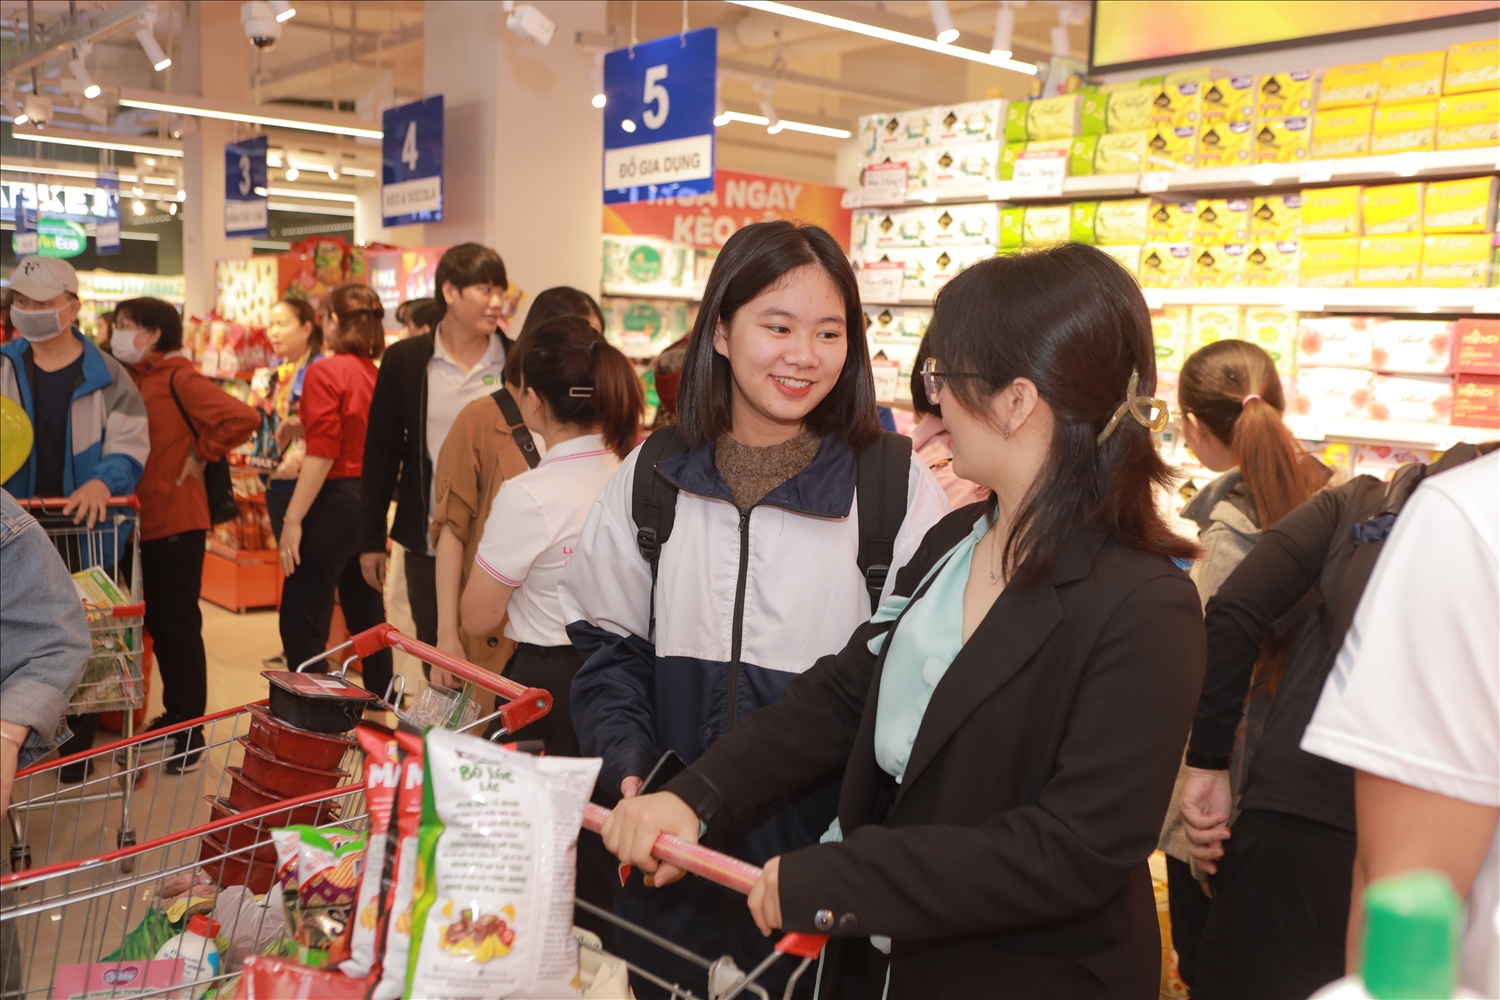 (Tin) Đón mùa mua sắm cuối năm, WinCommerce nâng cấp loạt siêu thị mới 7